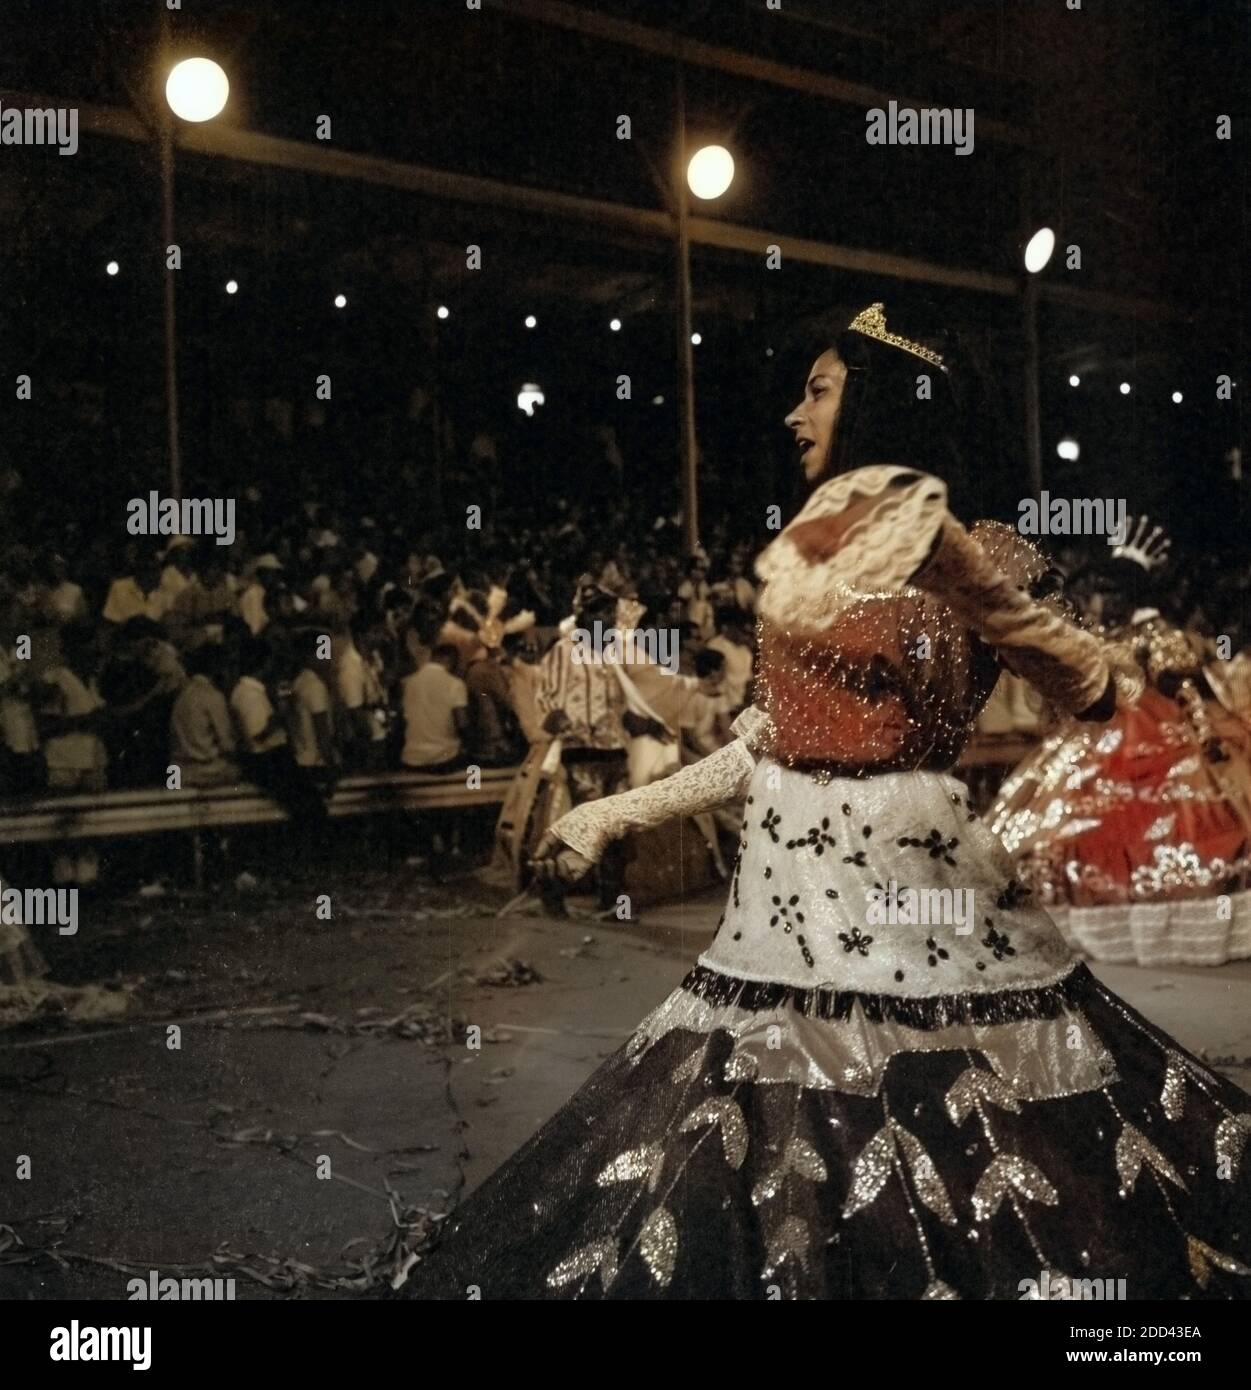 Karneval in Rio de Janairo, Brasilien 1966. Carnival in Rio de Janairo, Brazil 1966. Stock Photo